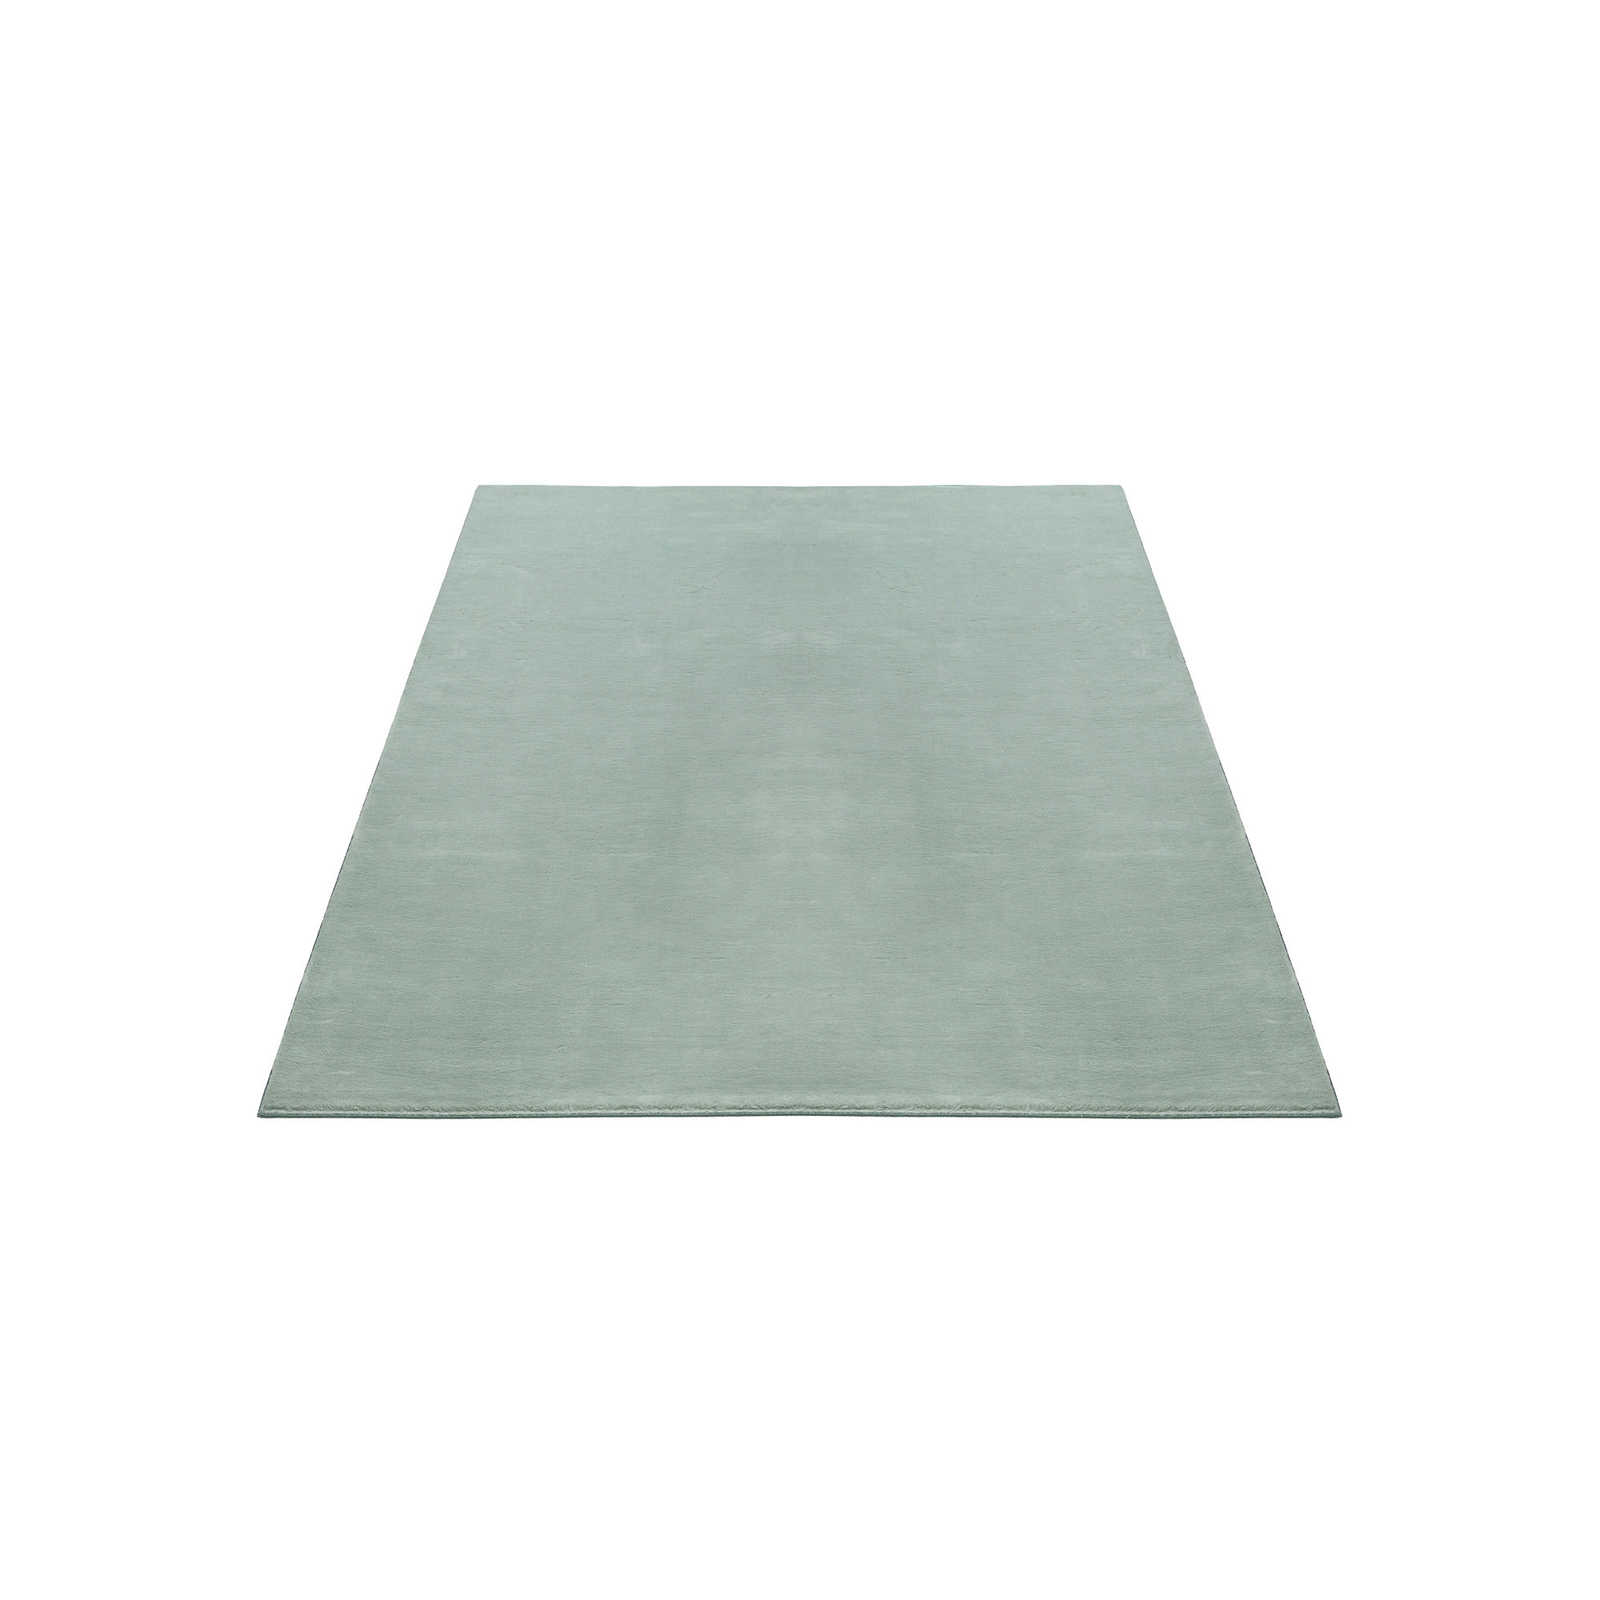 Weicher Hochflor Teppich in sanften Grün – 200 x 140 cm
